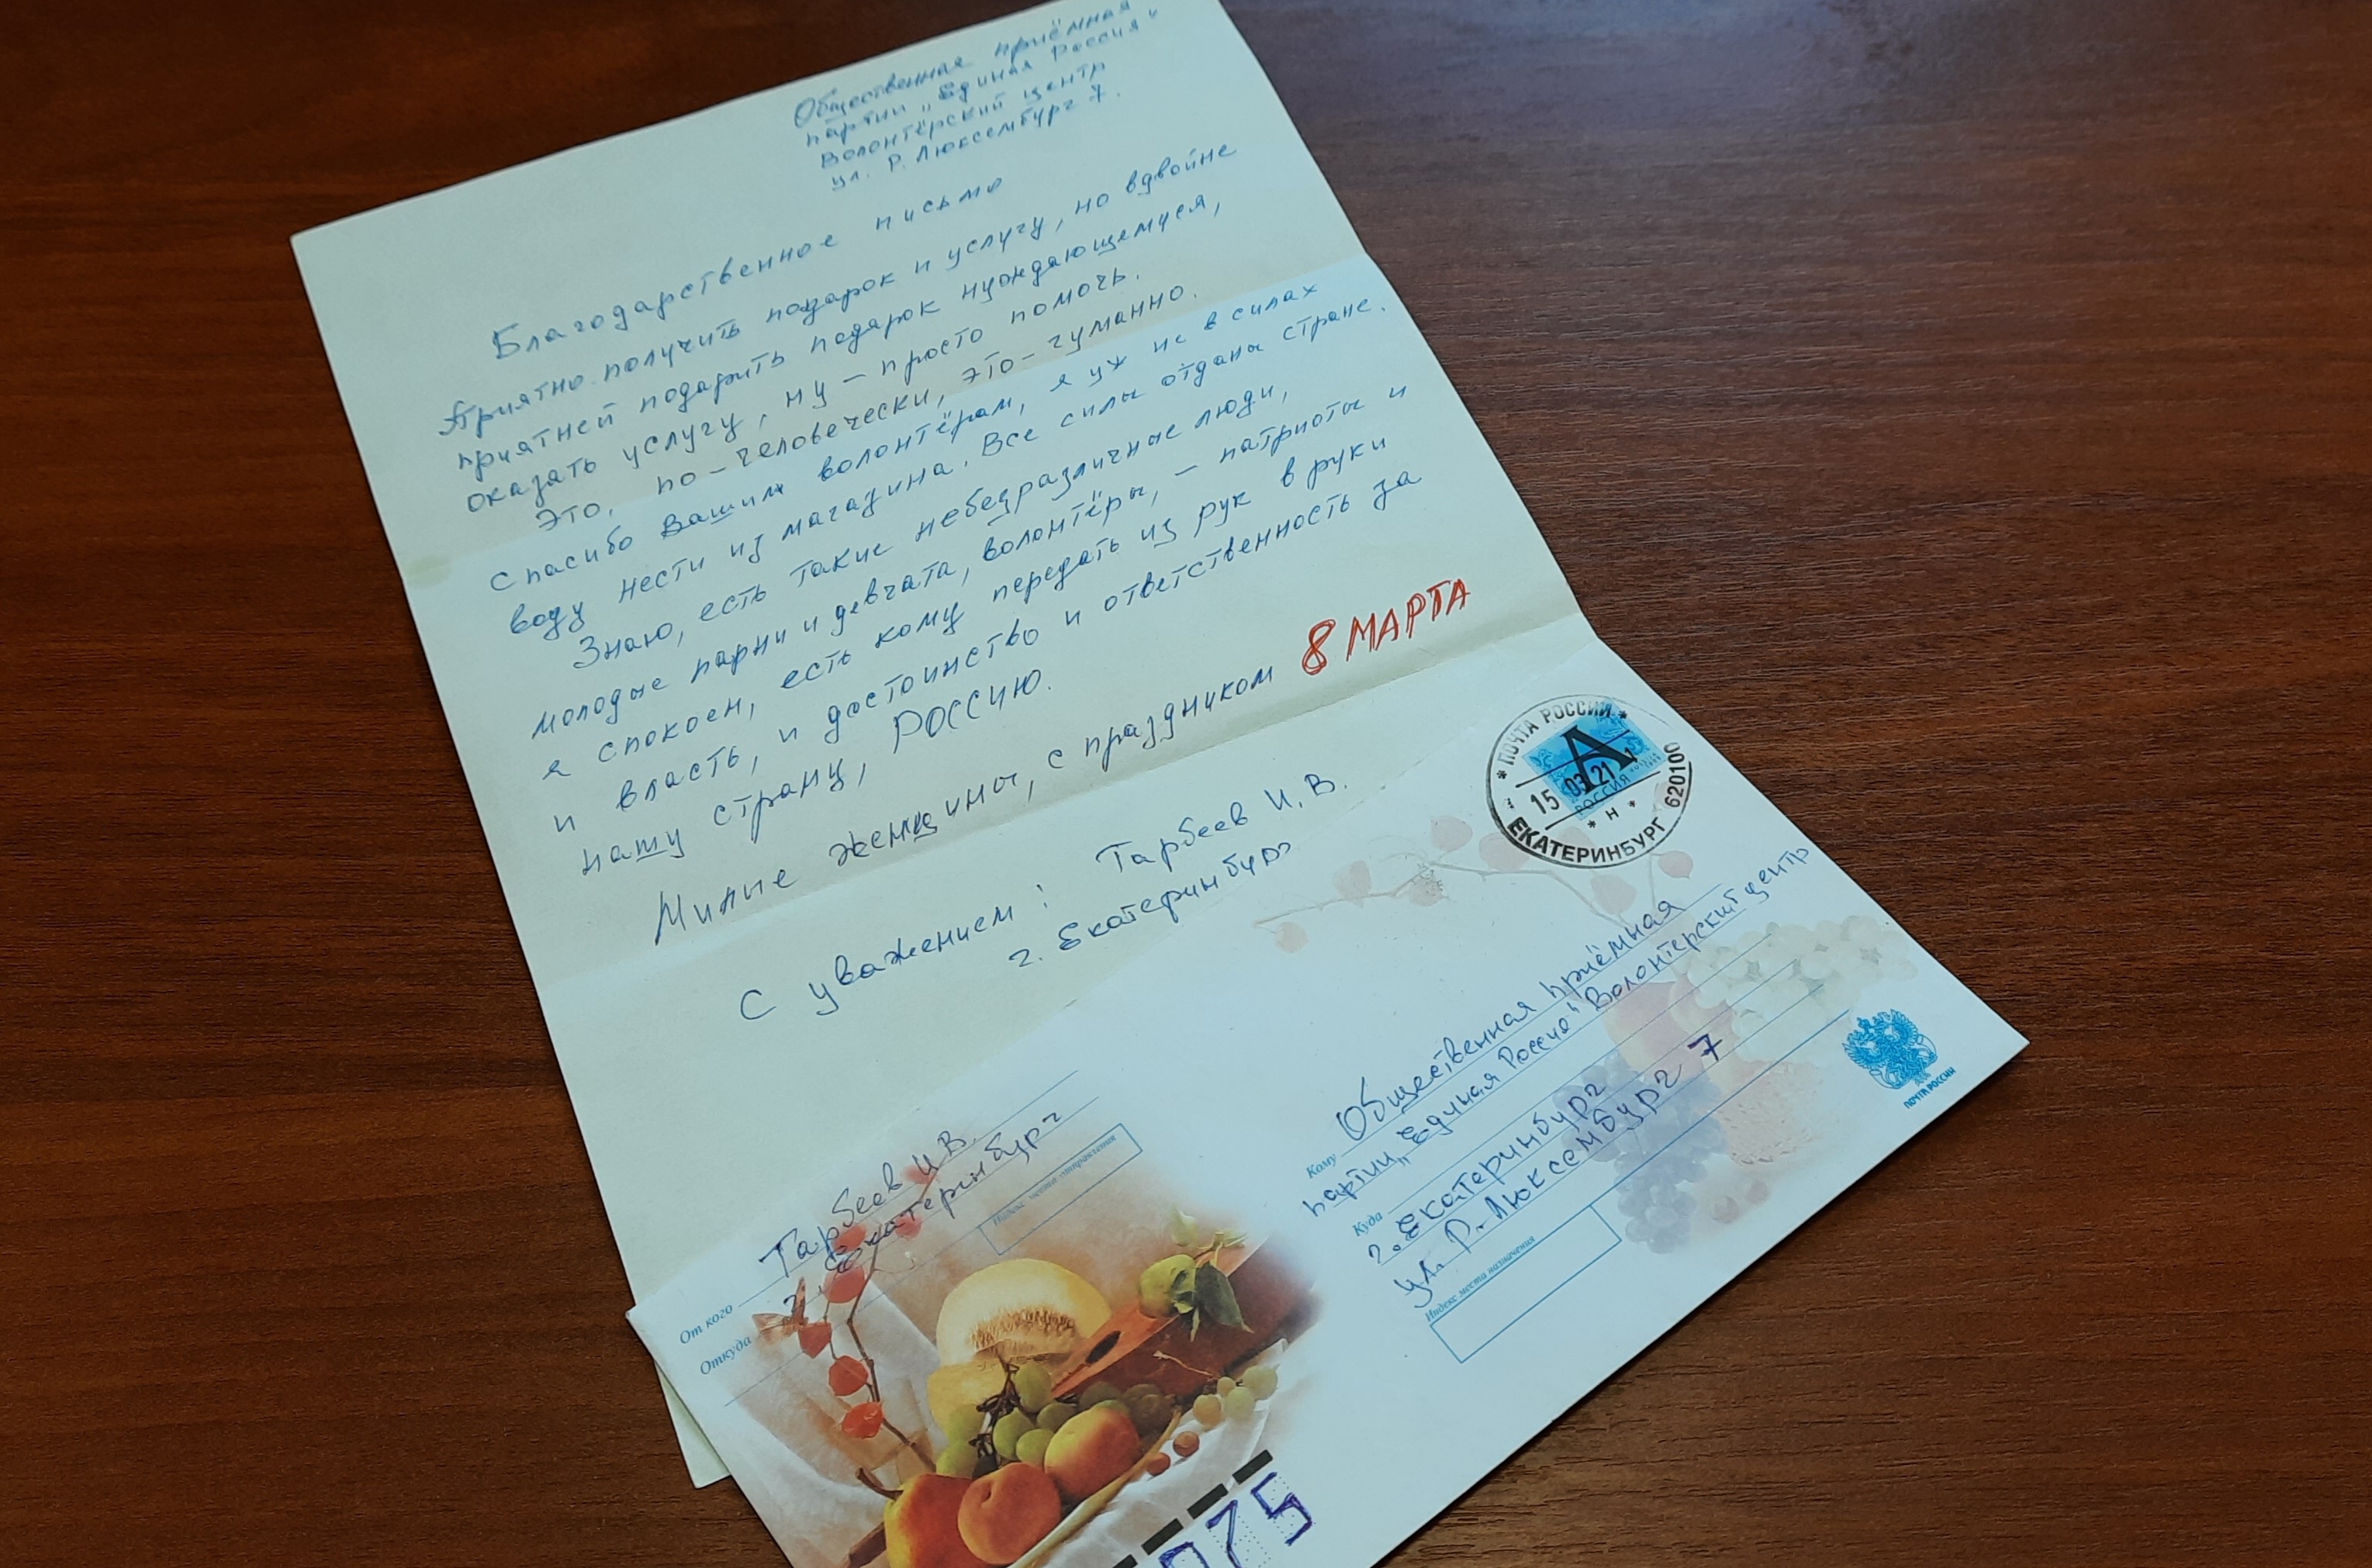 "Спасибо вашим волонтерам"- написал в письме житель Екатеринбурга